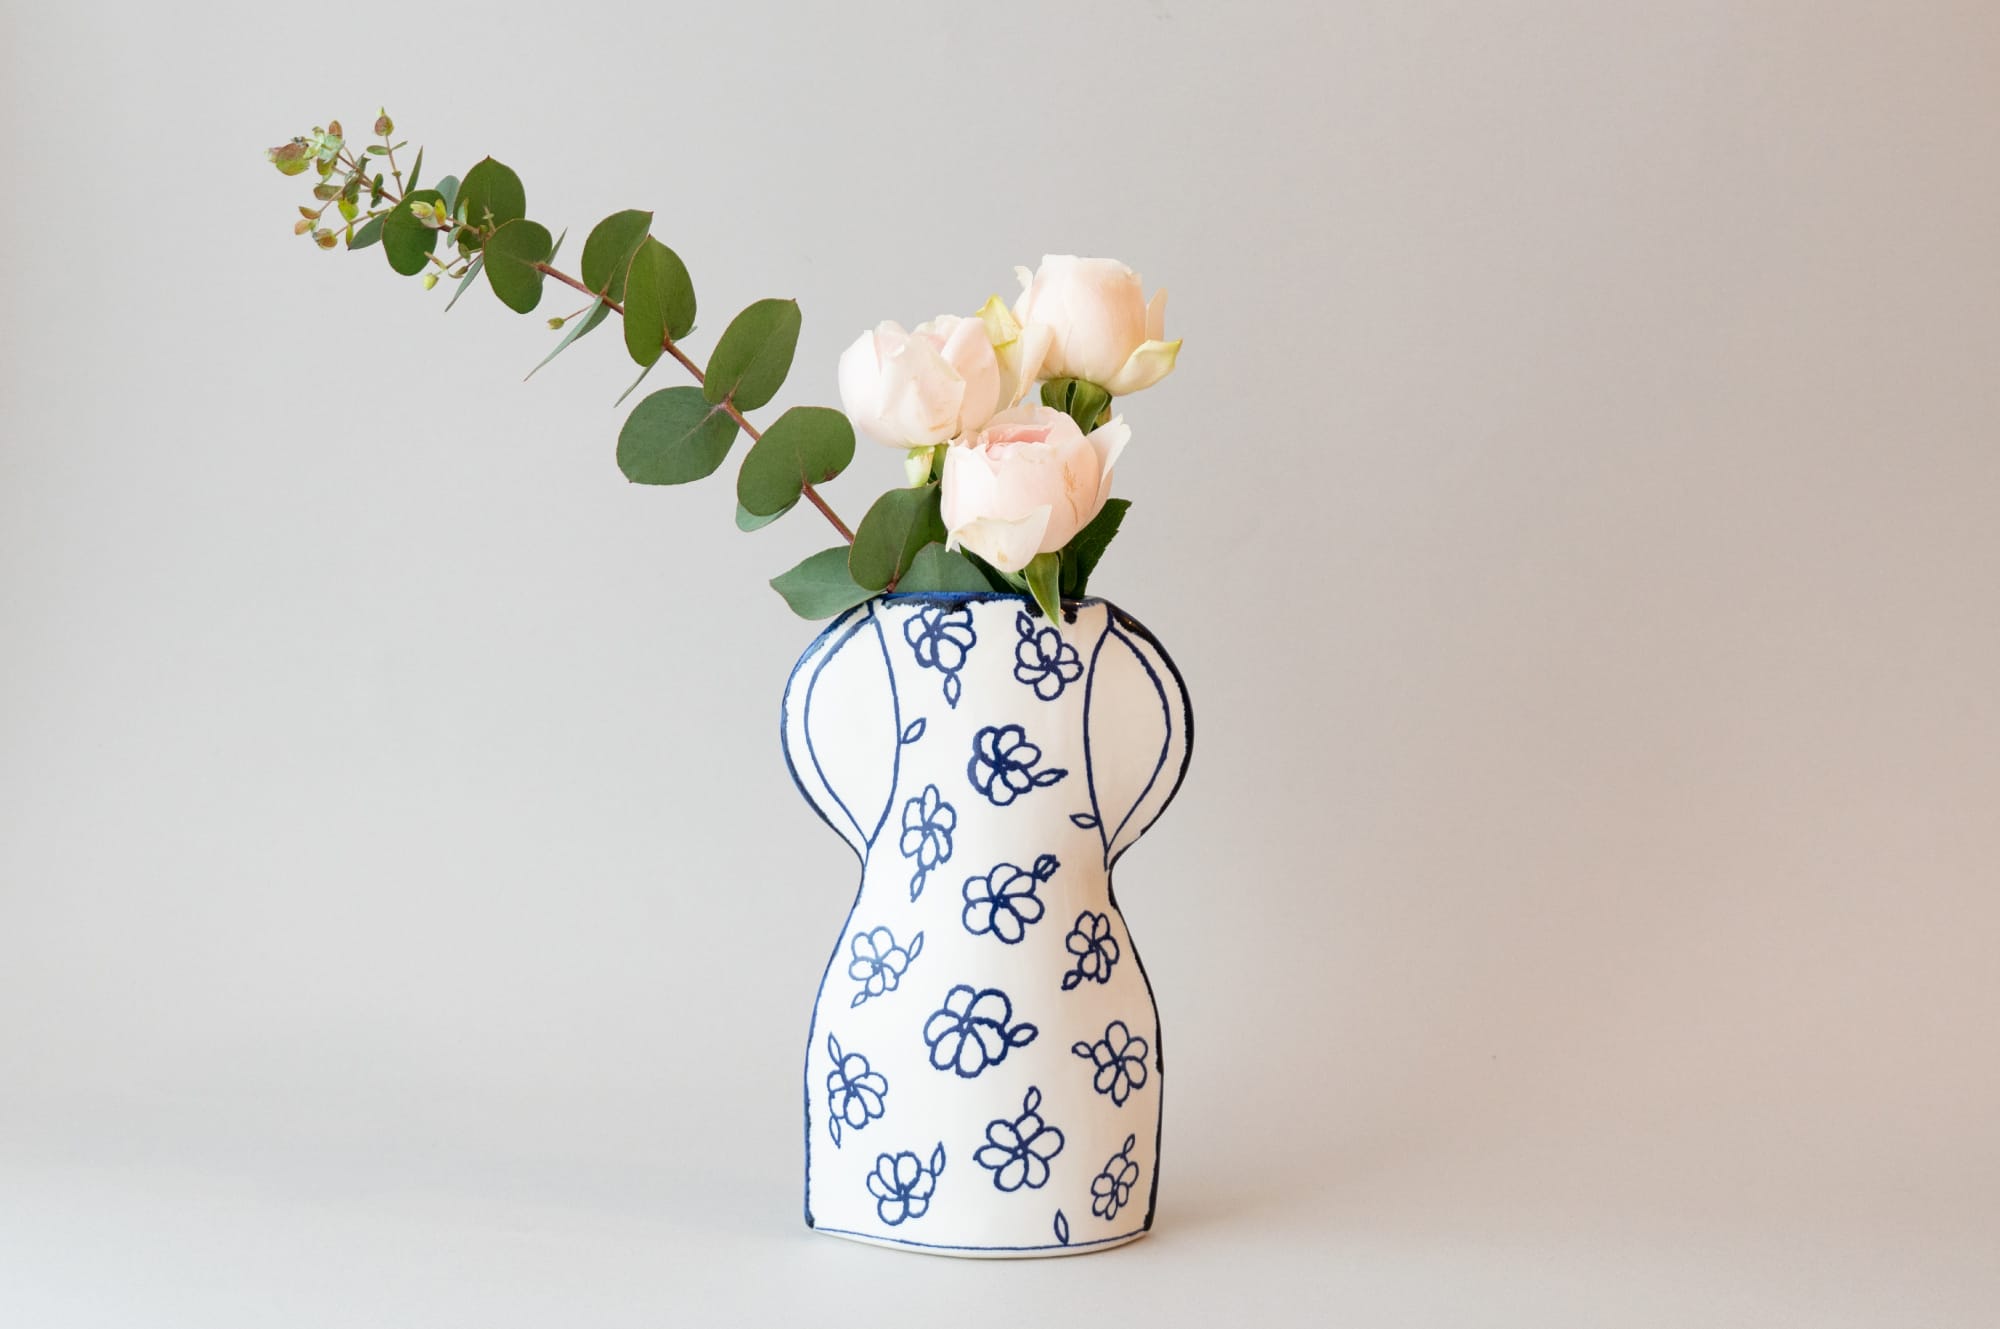 マリアンヌ・ハルバーグの「瀬戸焼の花瓶」で楽しむ花のある生活 